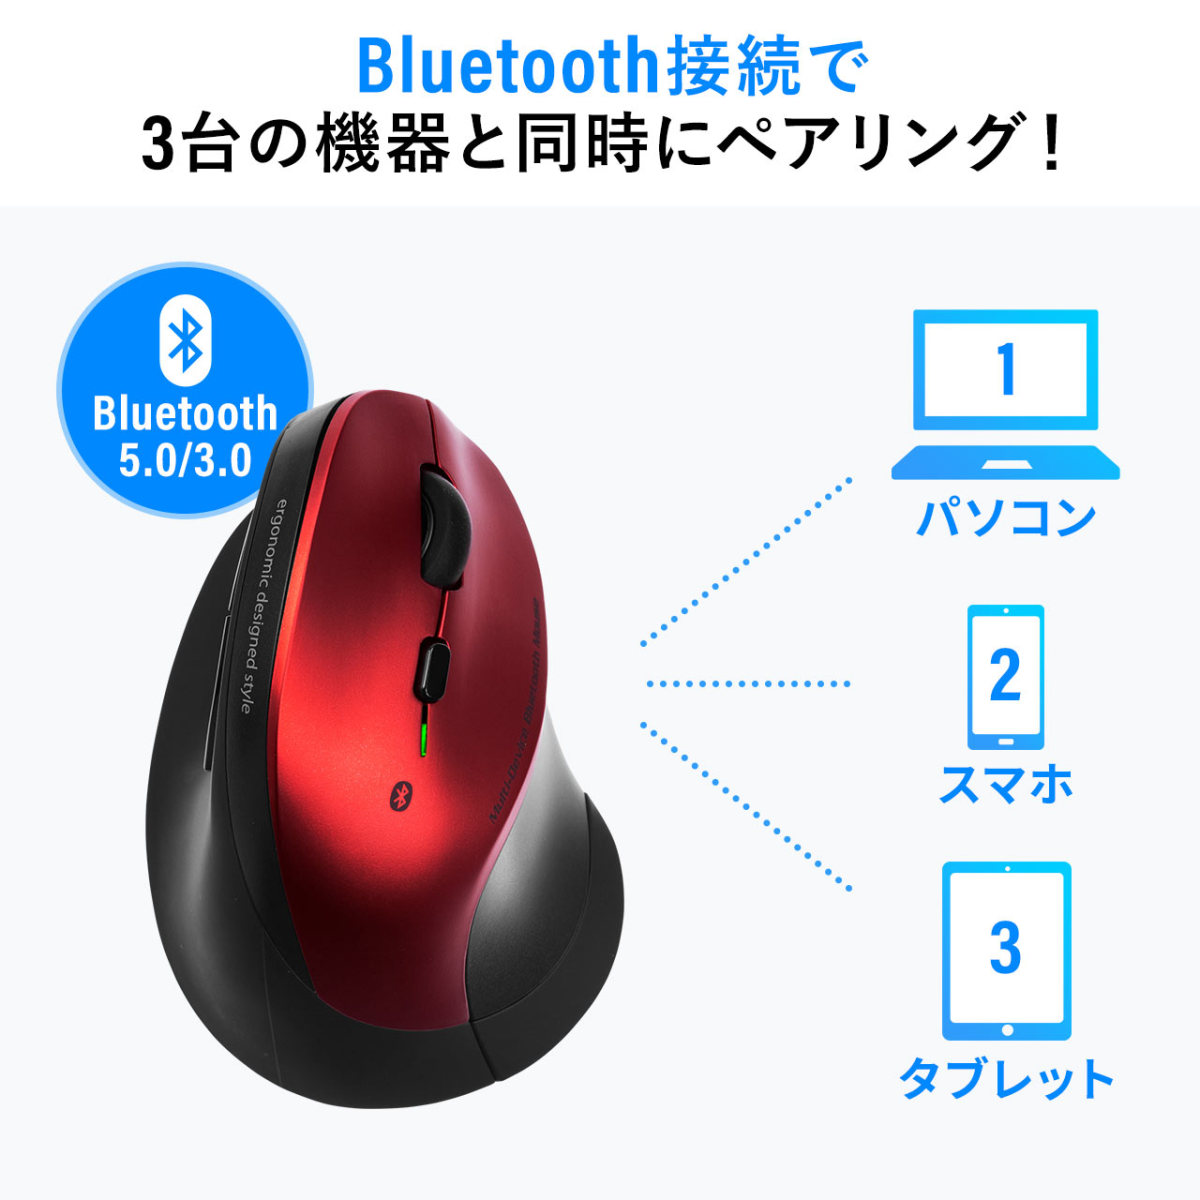 マウス Bluetooth ワイヤレス 無線 静音 エルゴノミクス 腱鞘炎防止 マルチペアリング カウント切り替え 縦型 400-MABT102